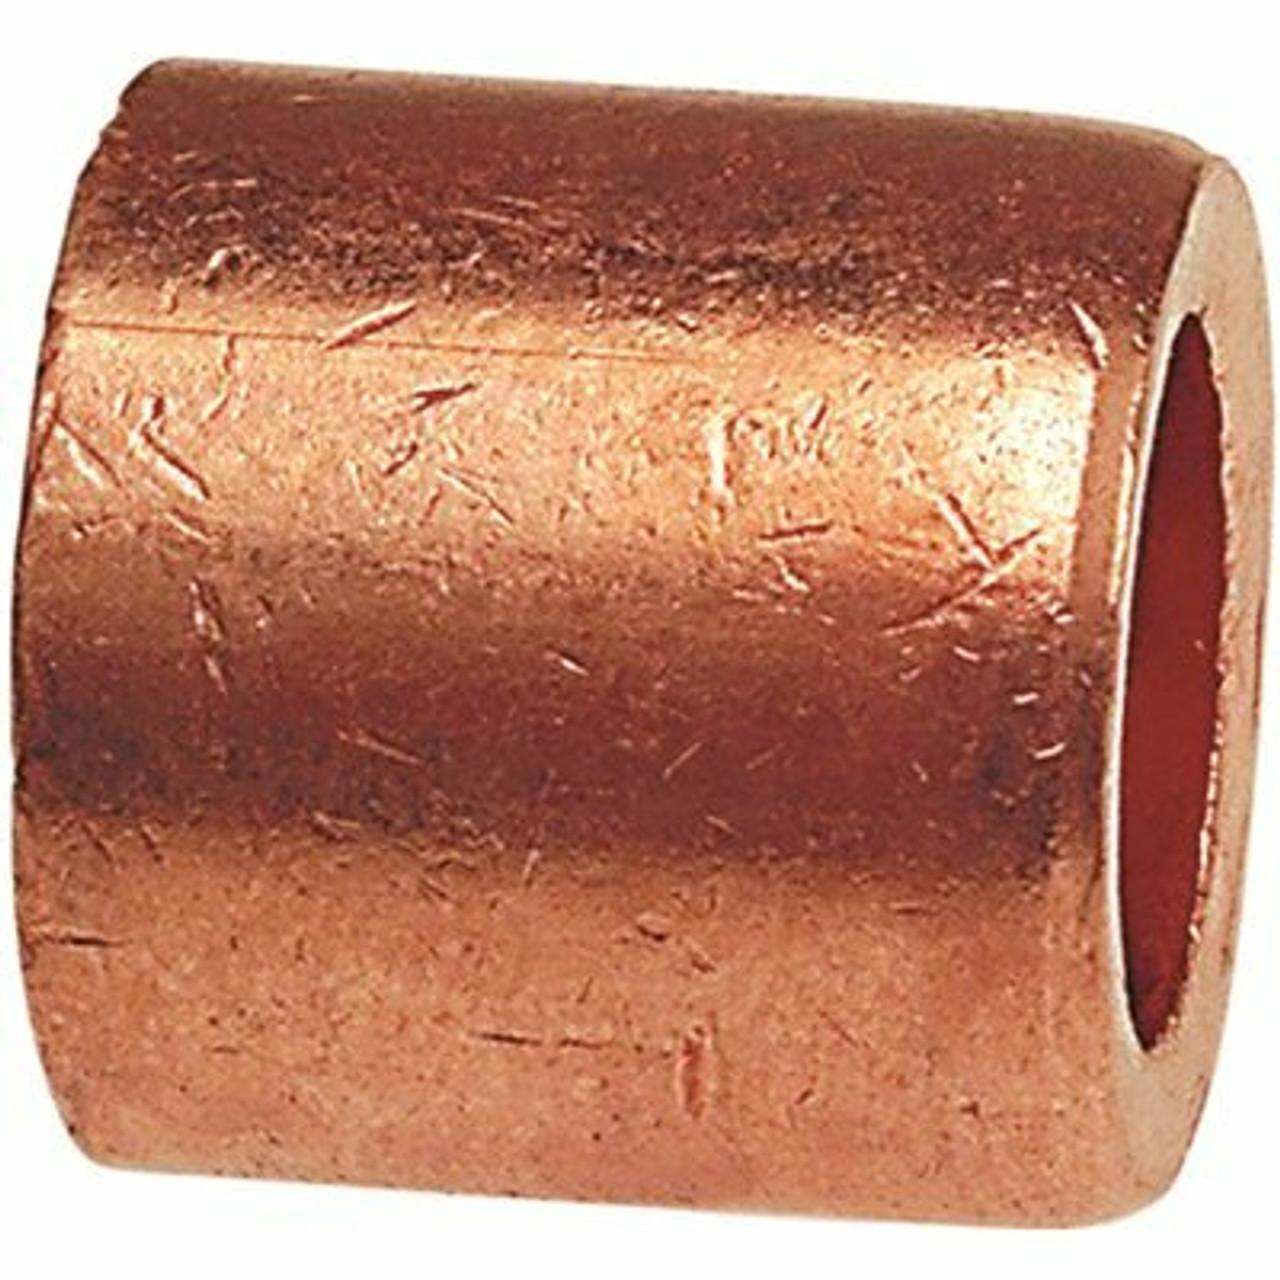 Nibco 3/4 In. X 1/2 In. Wrot Copper Ftg X C Flush Bush (25-Pack)